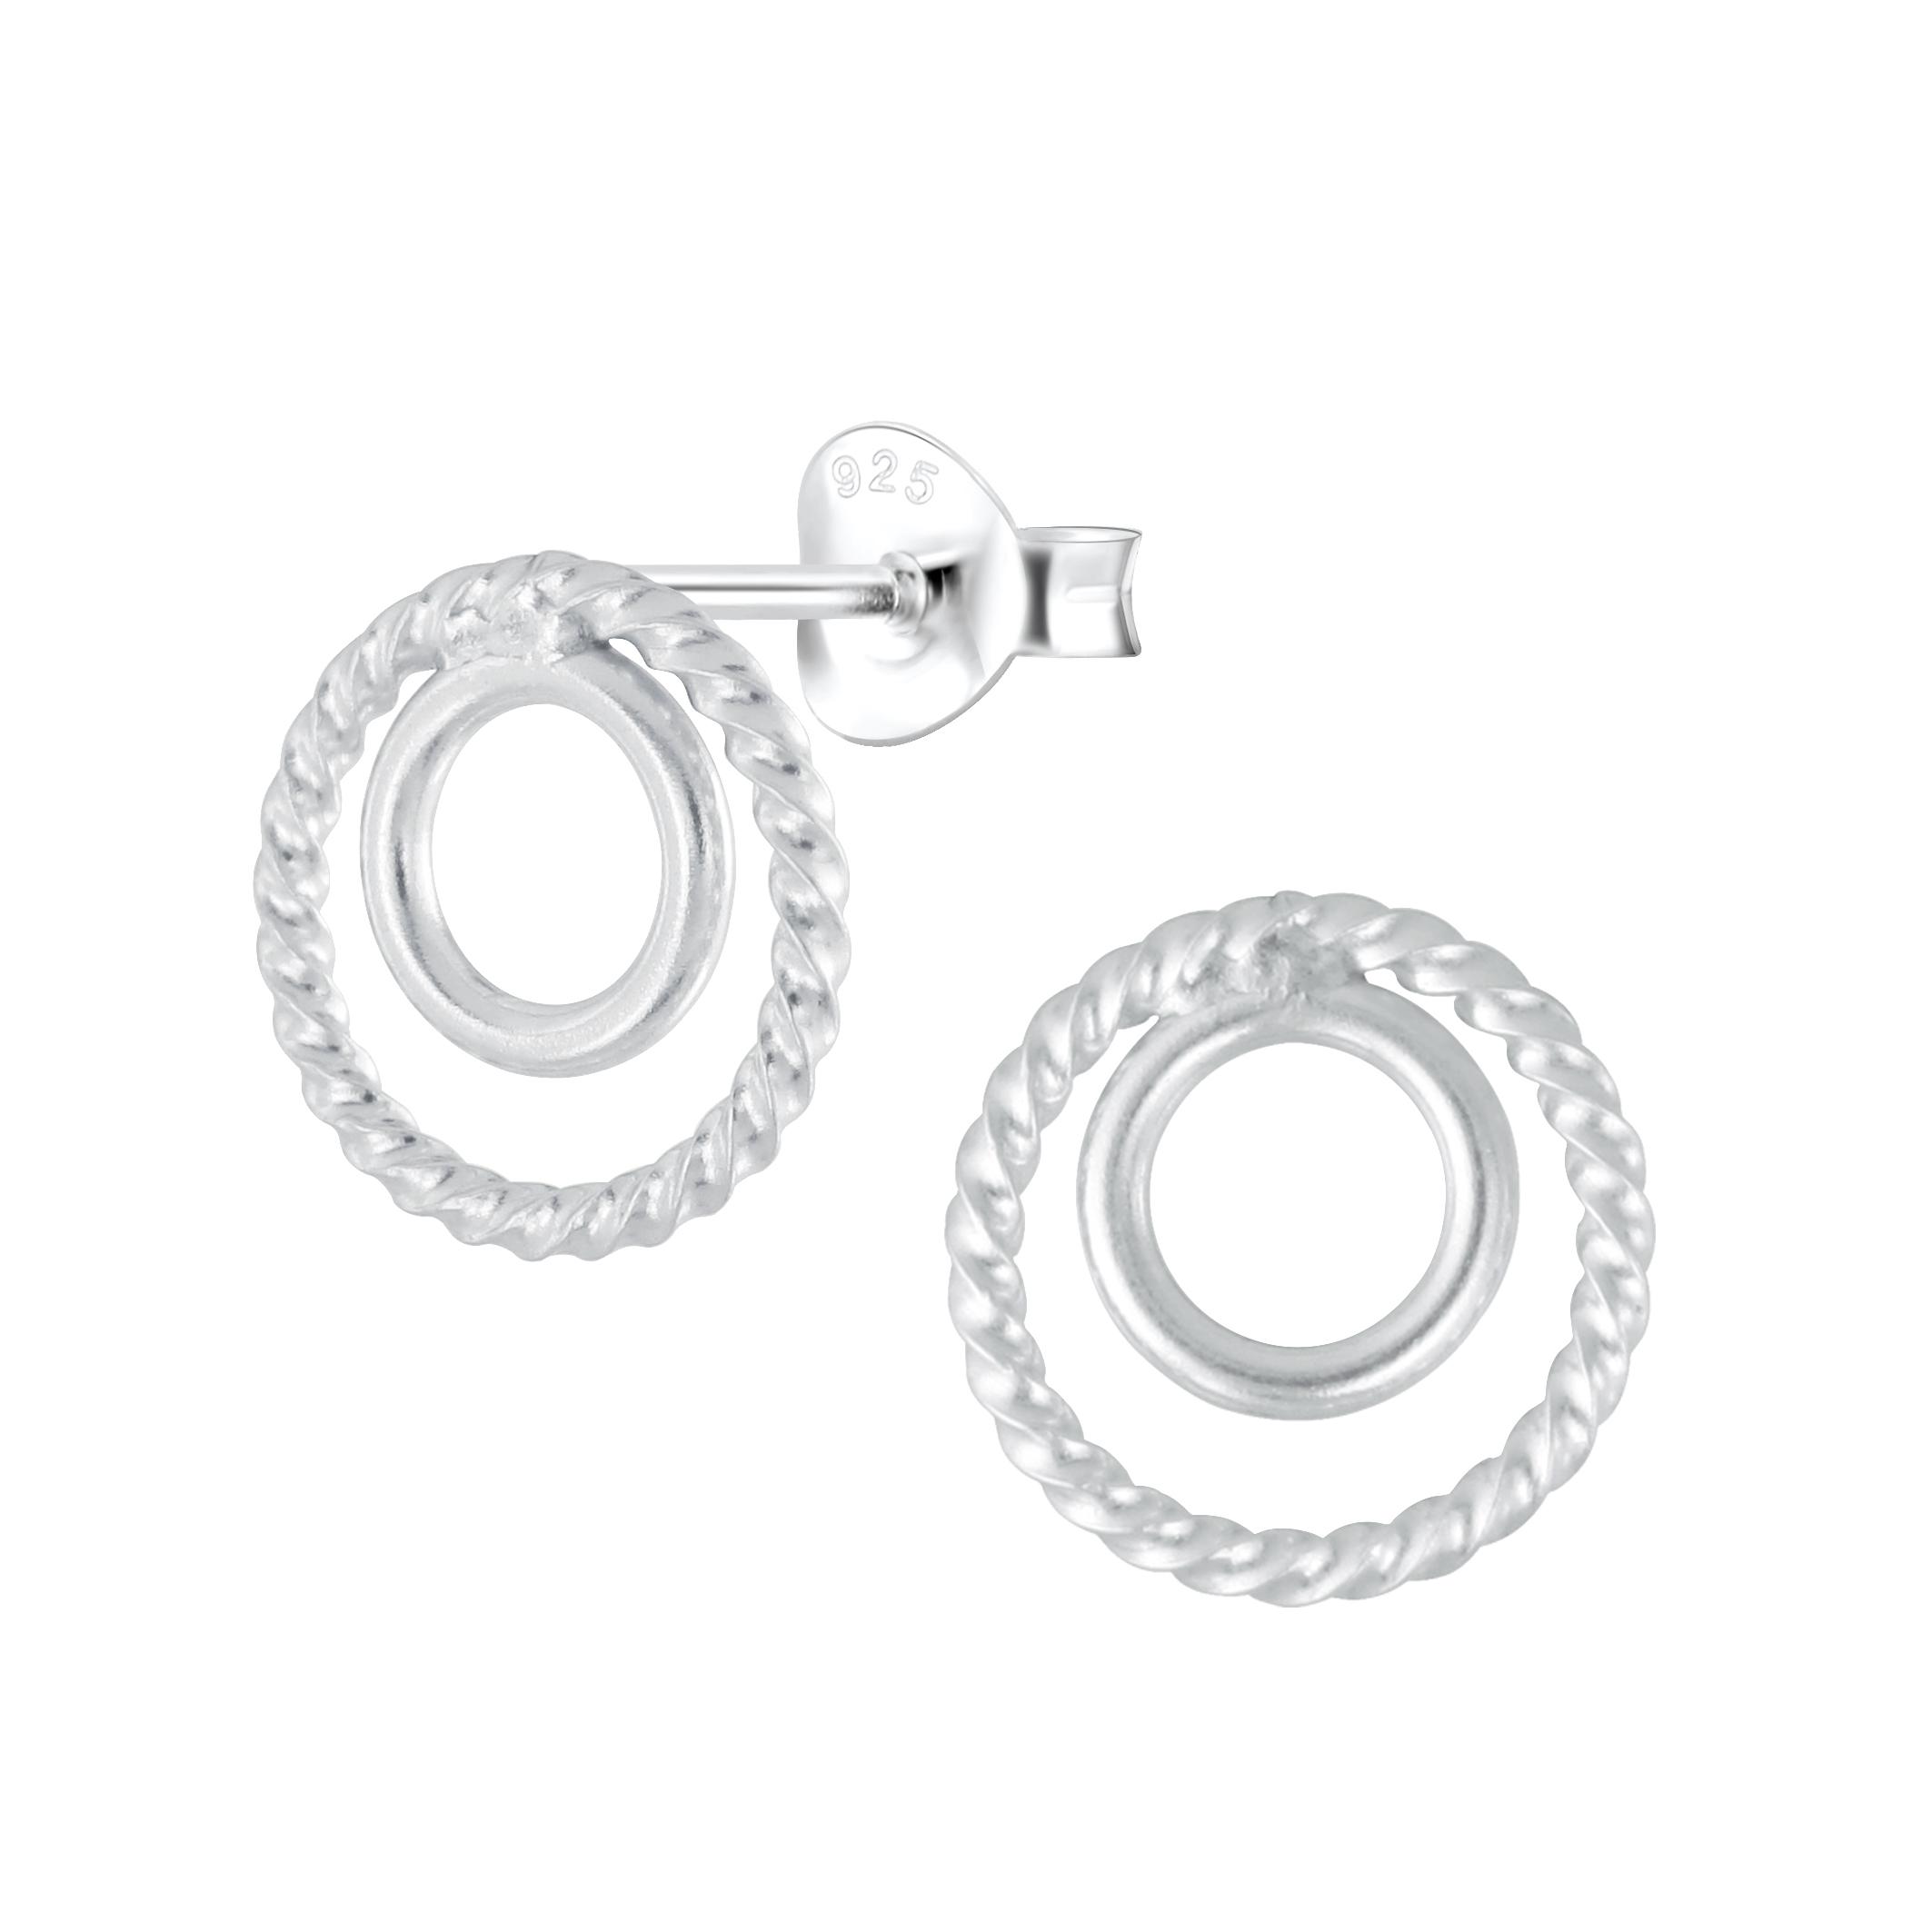 Kleine driehoek Sterling zilveren stud oorbellen Edgy moderne sieraden oorbellen cadeau voor haar CST002 Sieraden Oorbellen Oorknopjes 